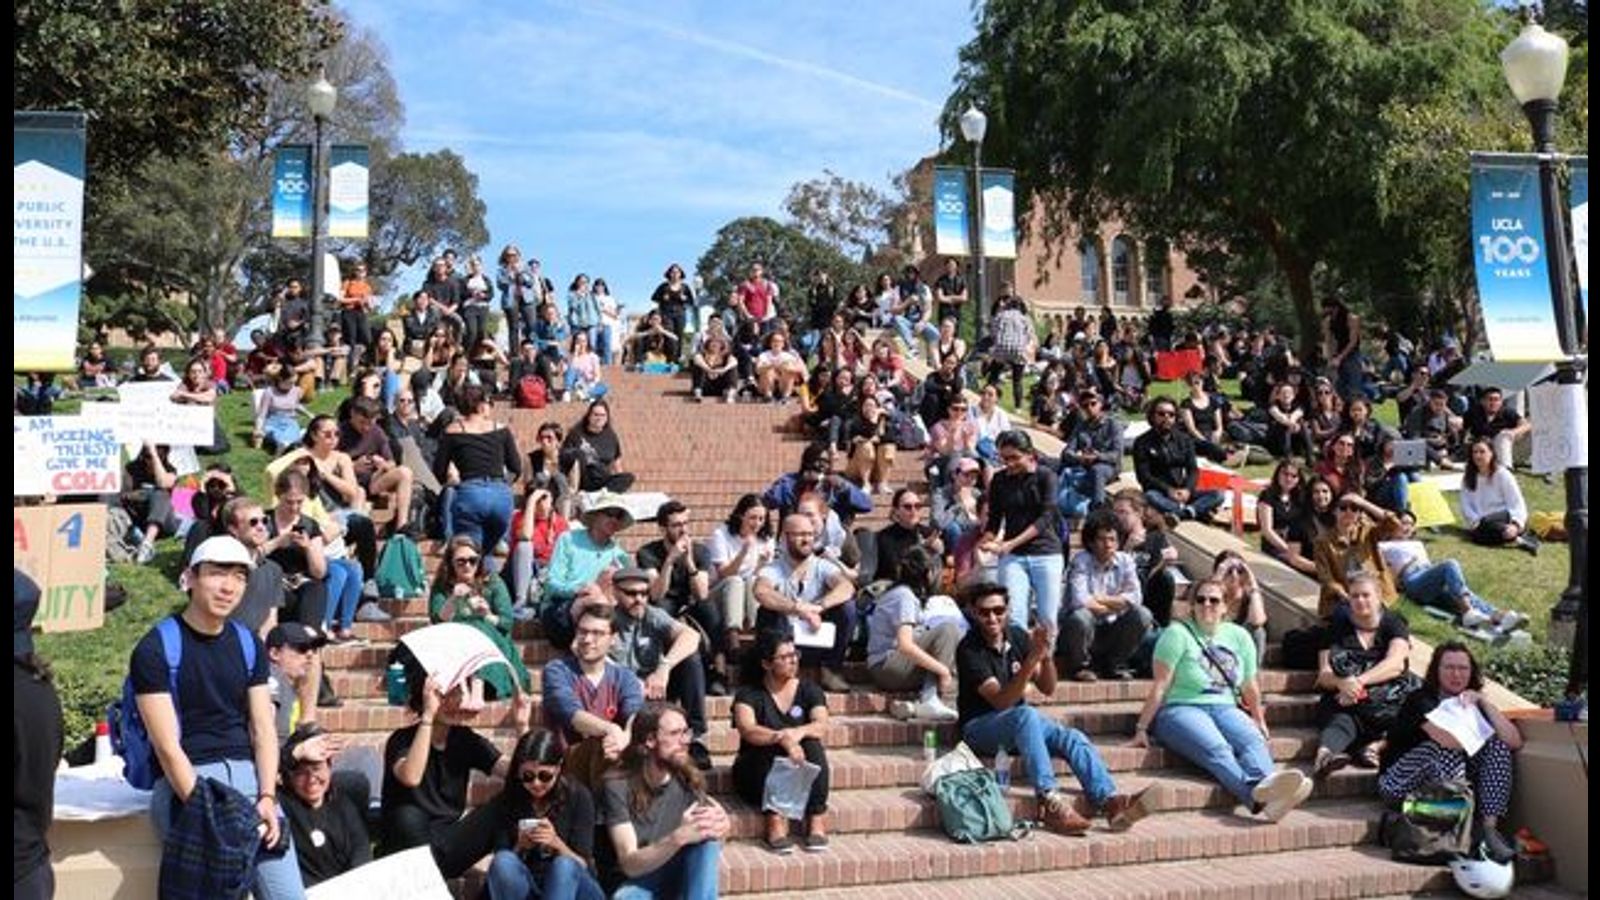 University of California wildcat strike continues despite quarantine ...